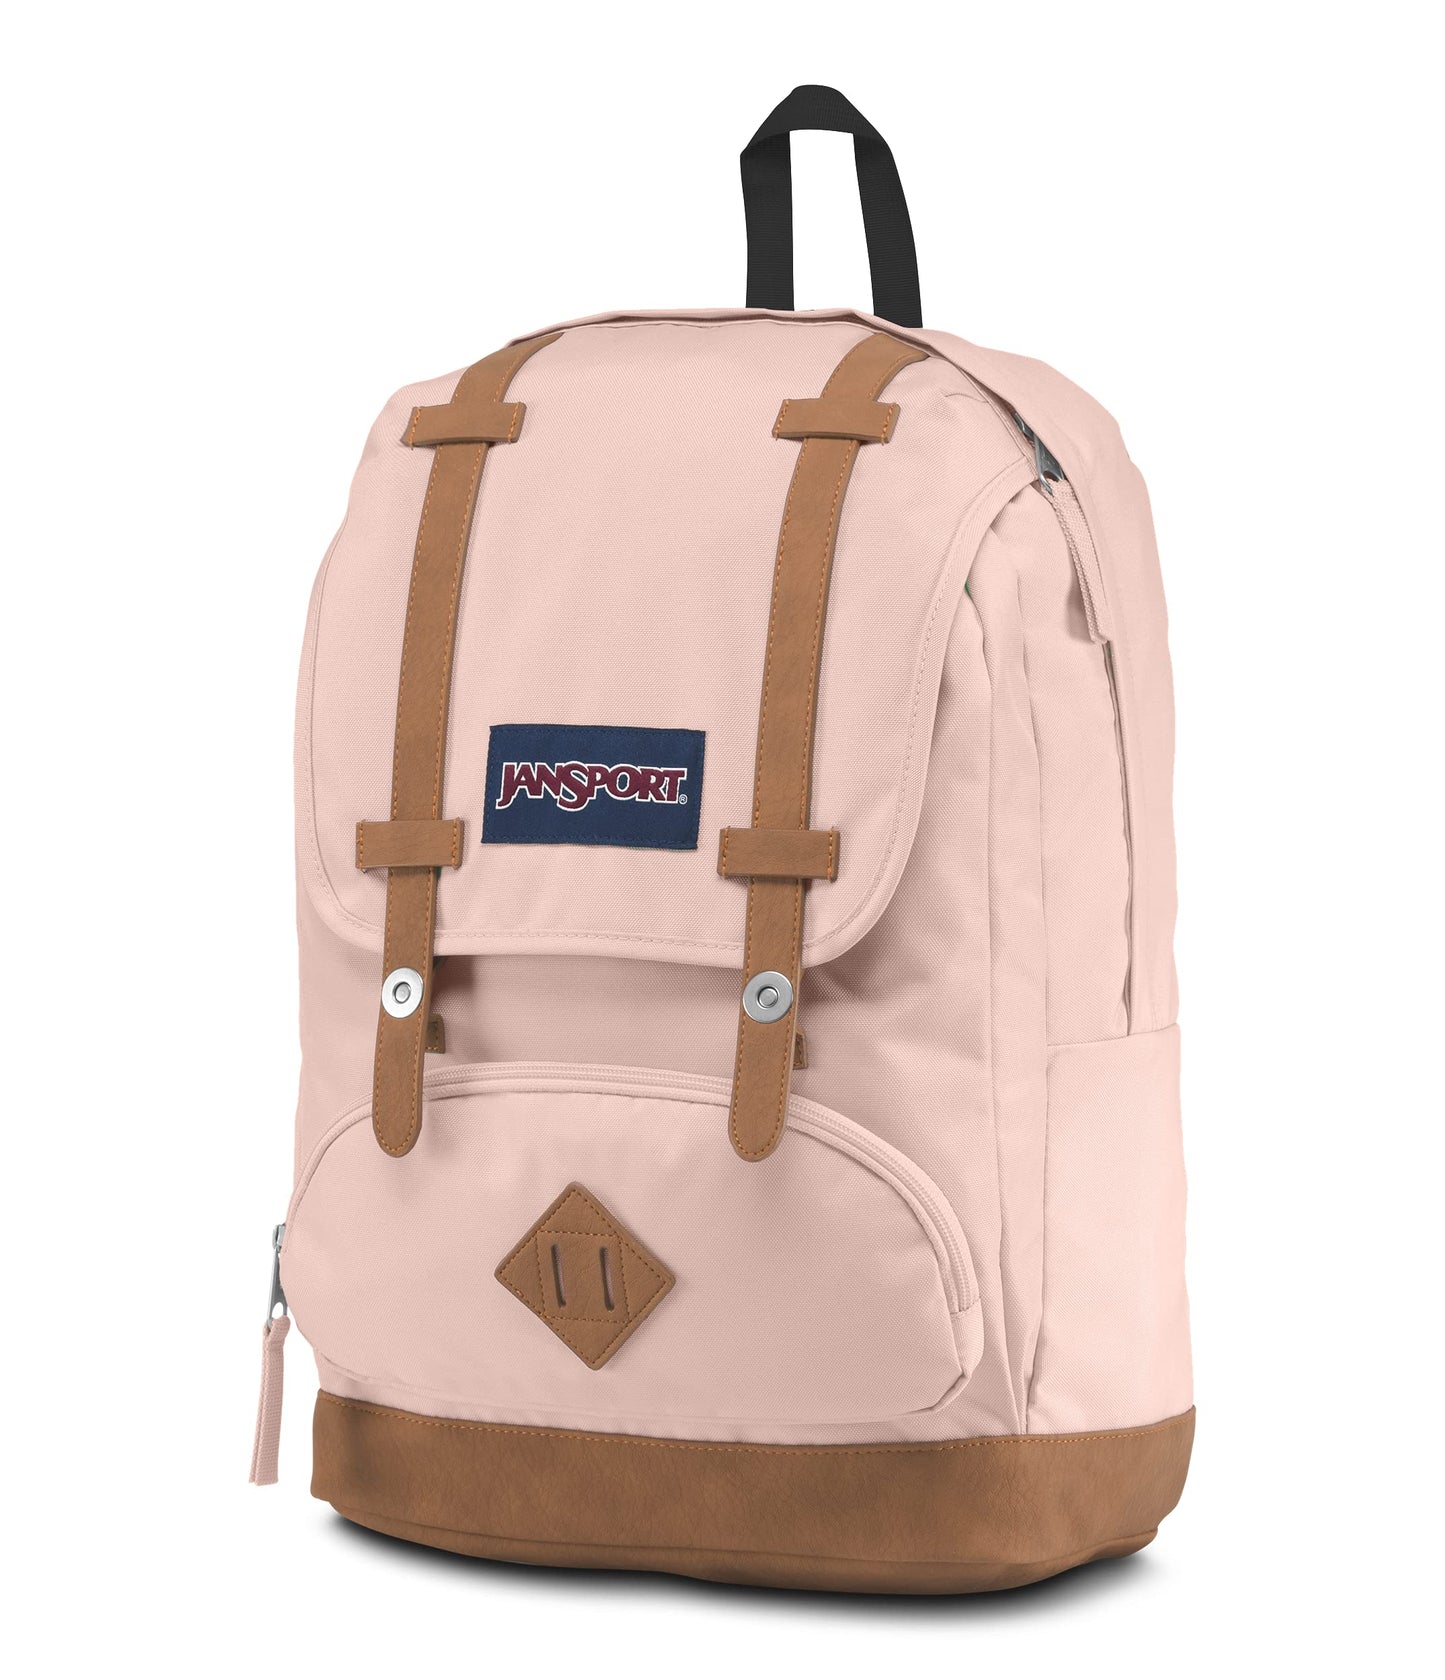 JanSport Cortlandt 15-inch Laptop Backpack-25 Liter School and Travel Pack